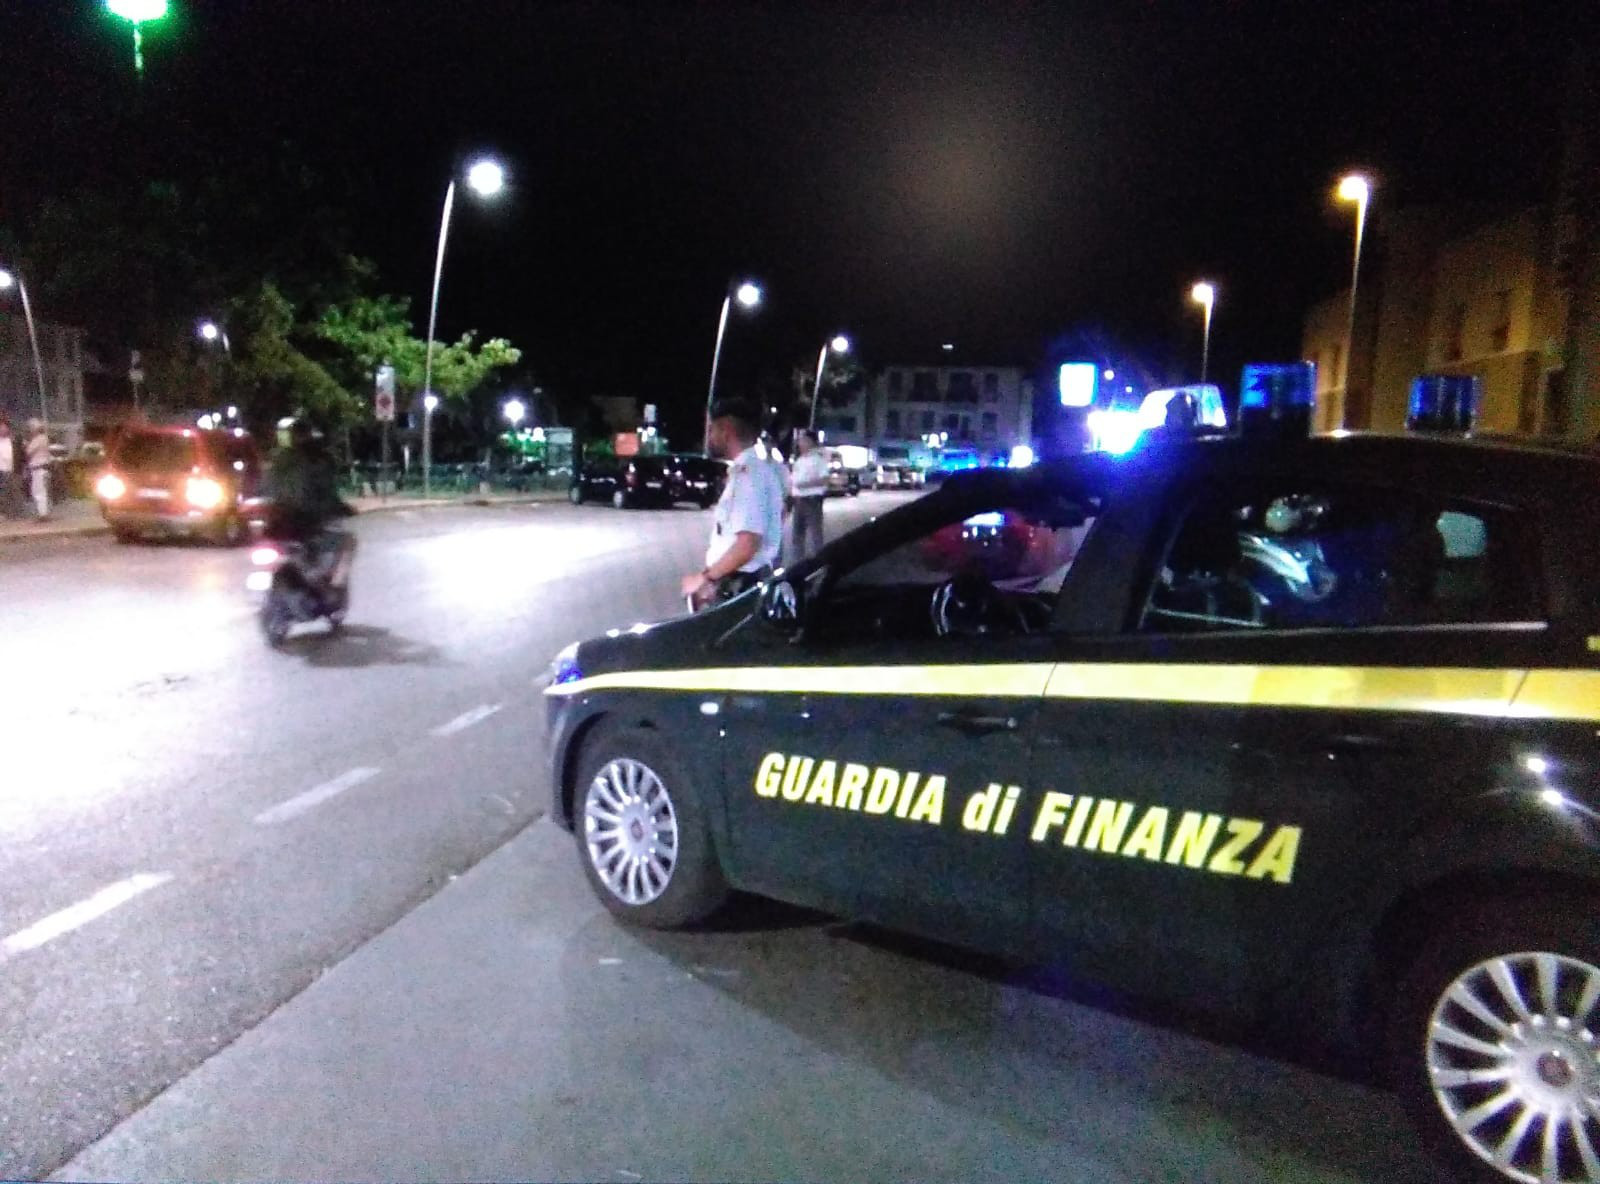 Sequestri antimafia per circa 7 milioni di euro tra Lucca e Caserta